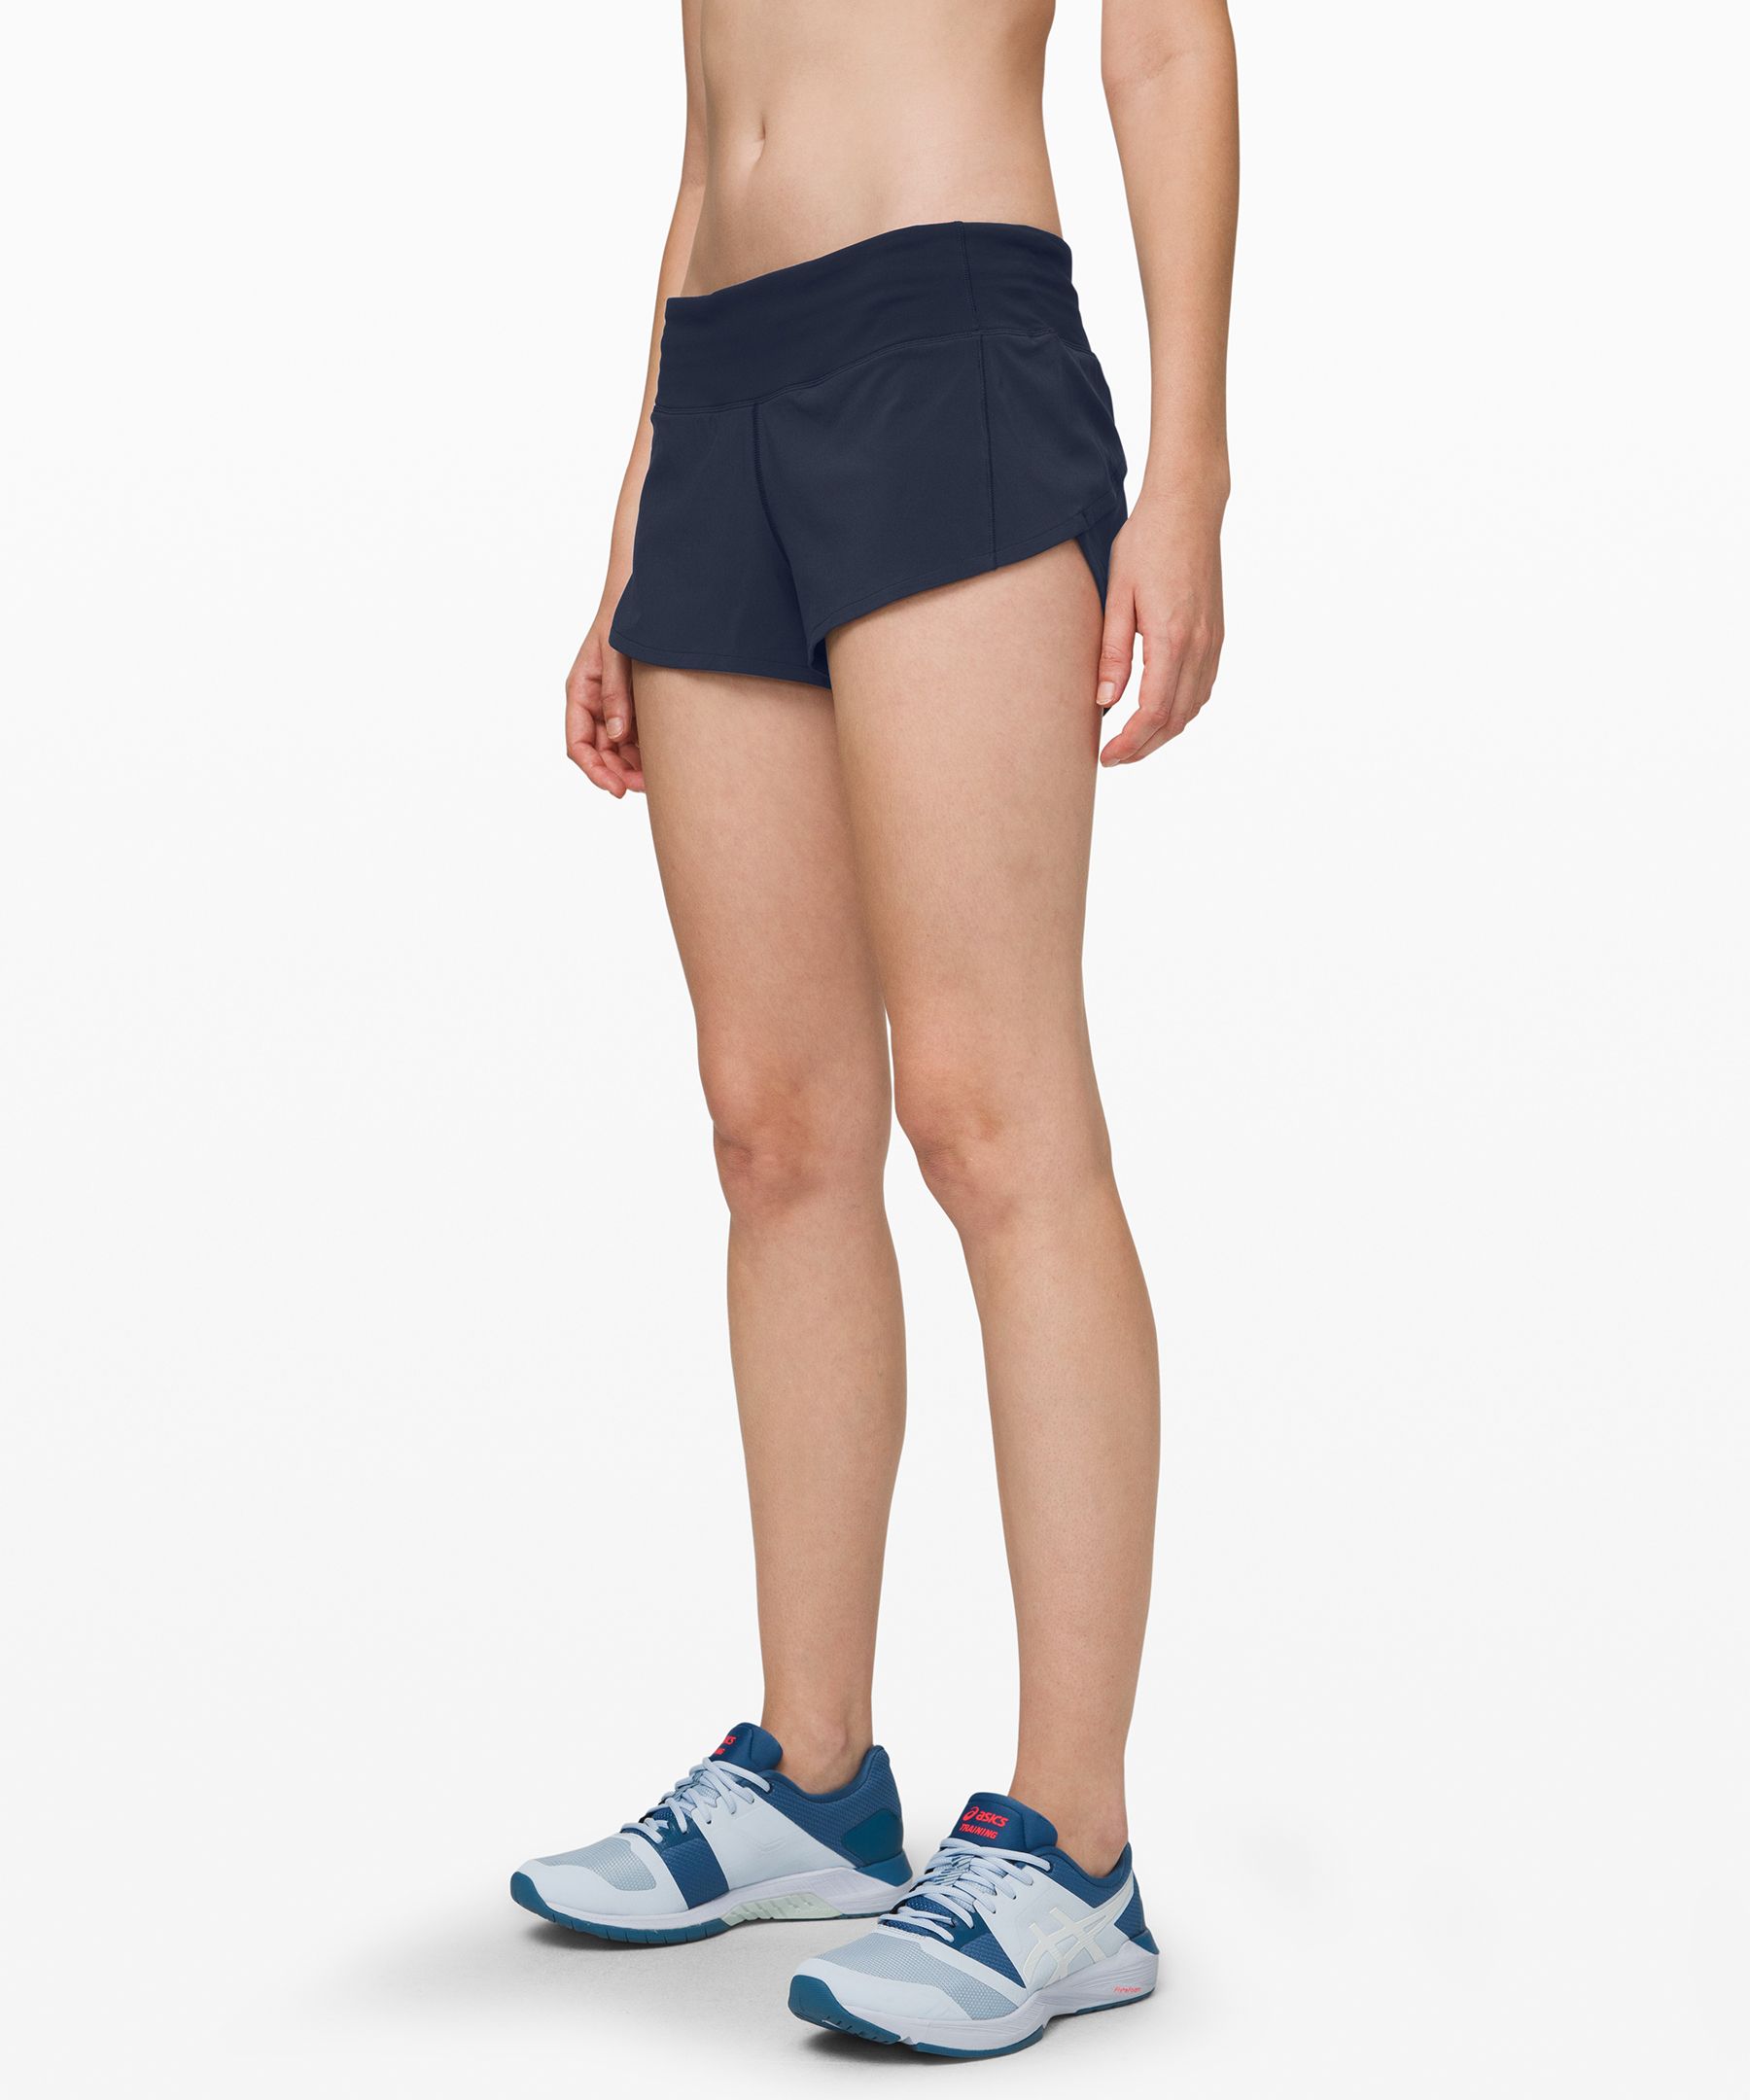 size 14 lululemon shorts